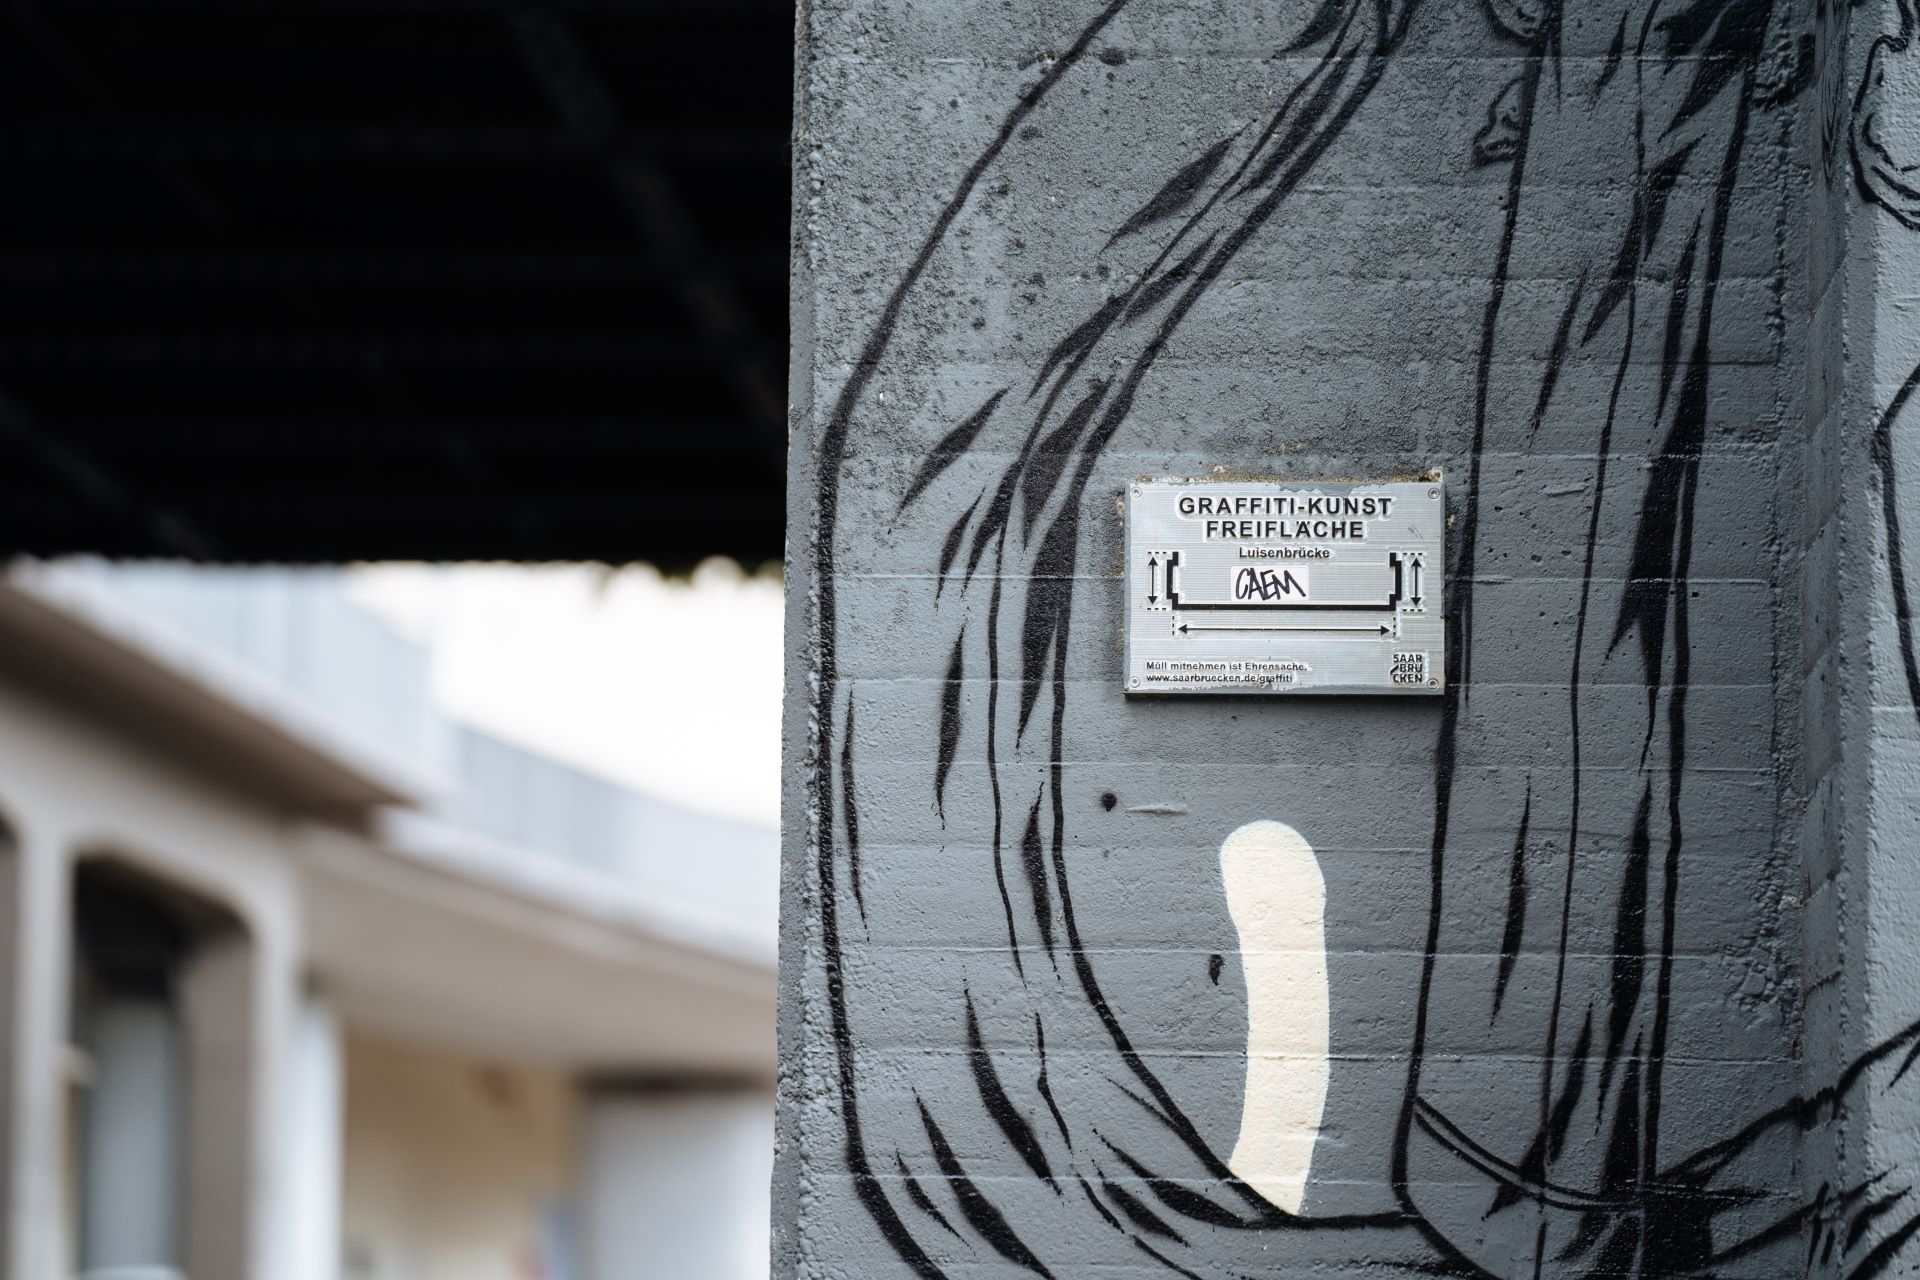 An einer stark bemalten Wand unter einer Brücke ist ein Schild mit der Aufschrift "Graffiti-Kunst Freifläche" zu sehen.